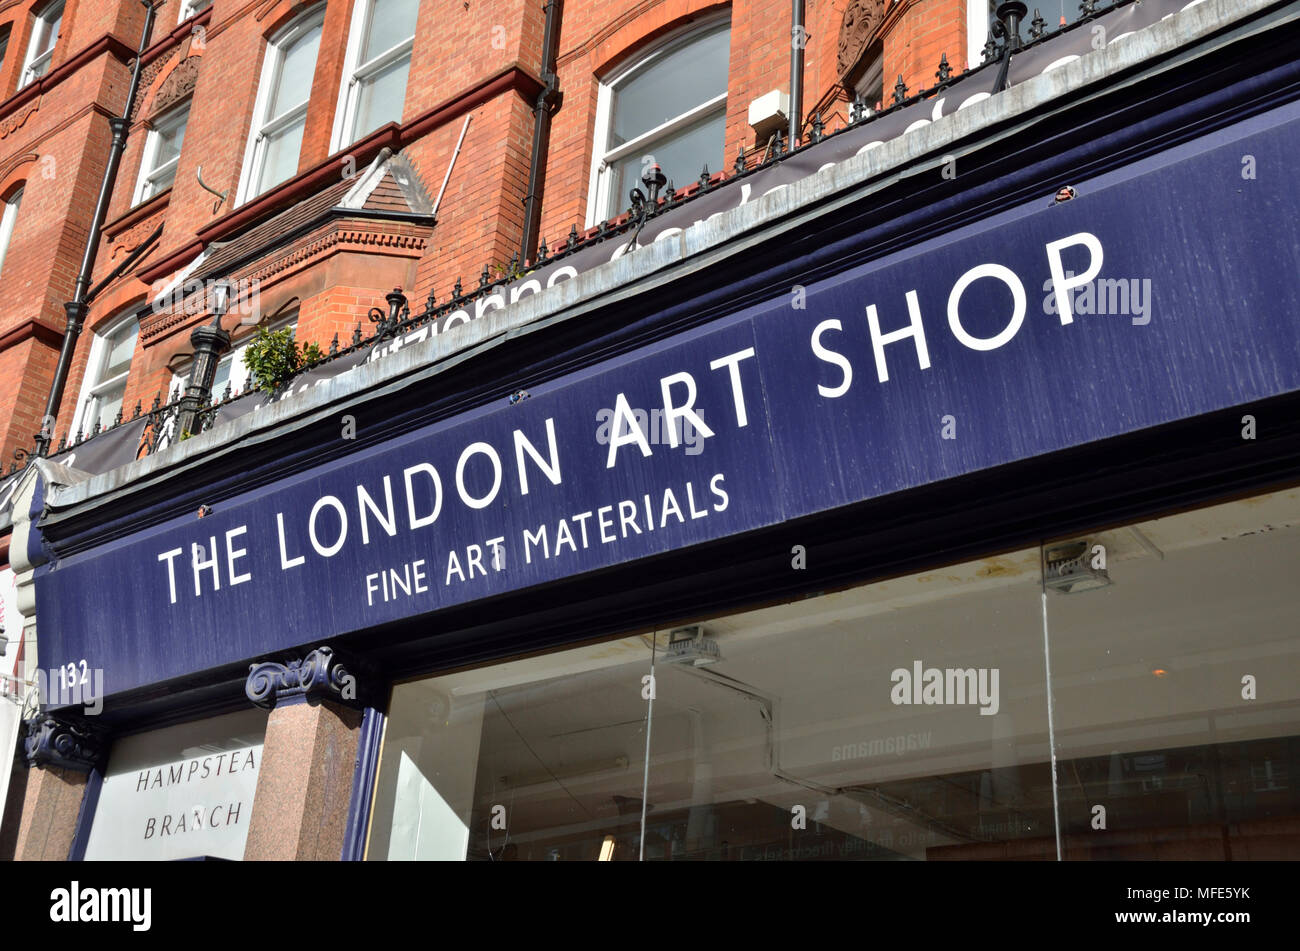 La London Art Shop de Finchley Road, NW3, Londres, Royaume-Uni. Banque D'Images